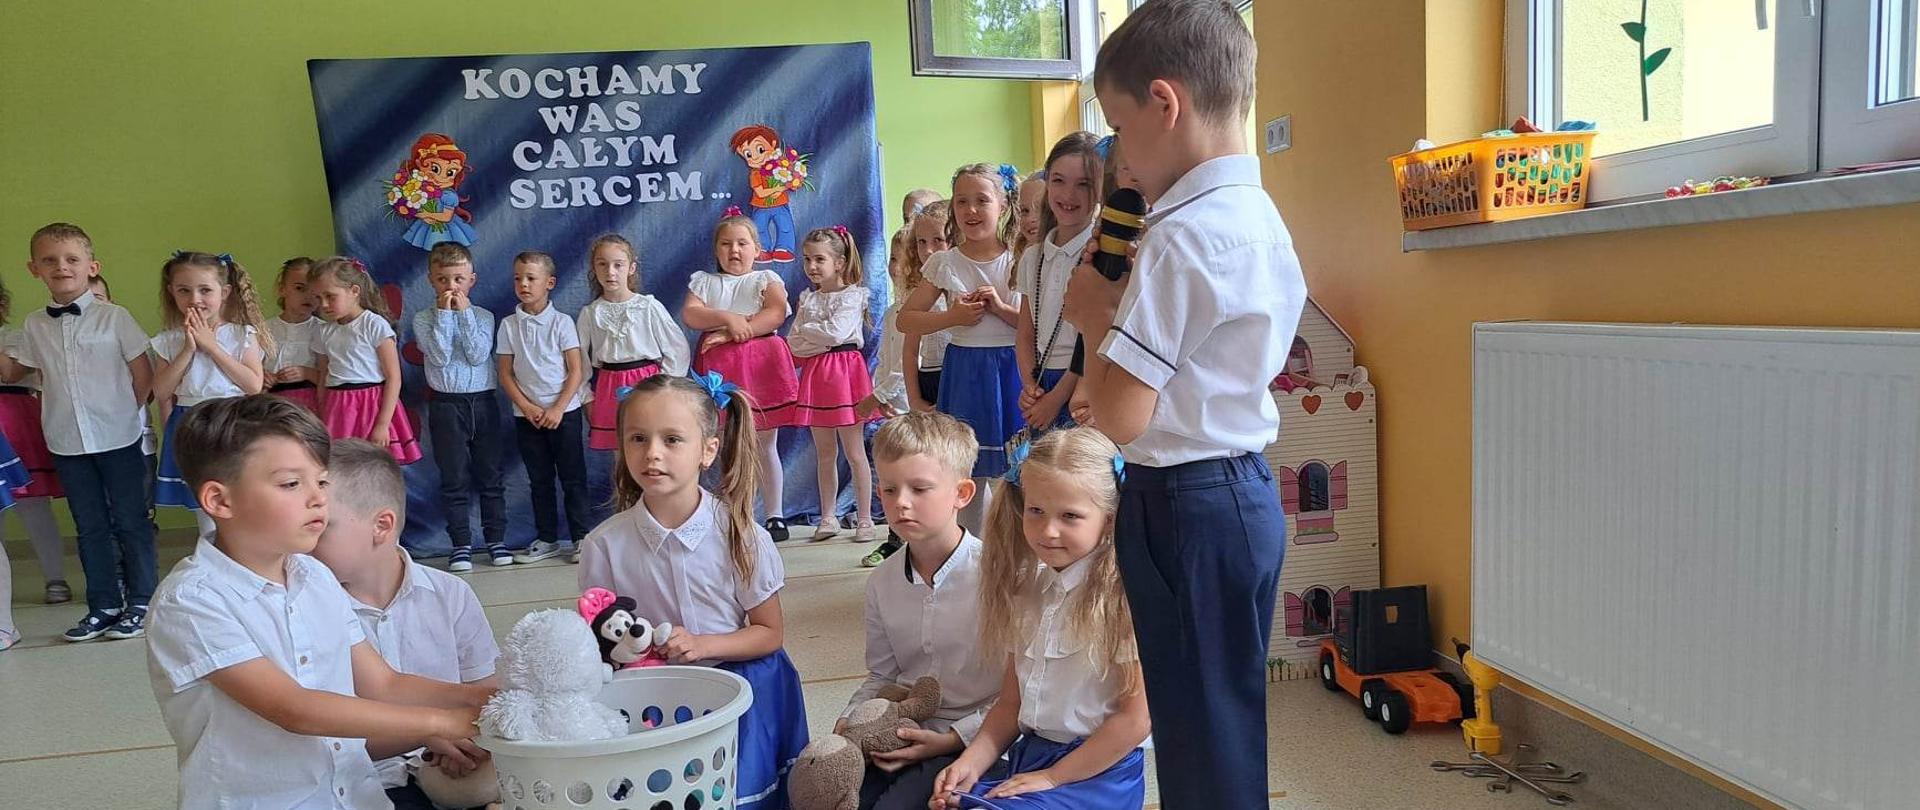 5 dzieci siedzi wokół plastikowego kosza z zabawkami. Jeden z chłopców mówi wiersz do mikrofonu. W tle widać pozostałe dzieci w odświętnych strojach. 